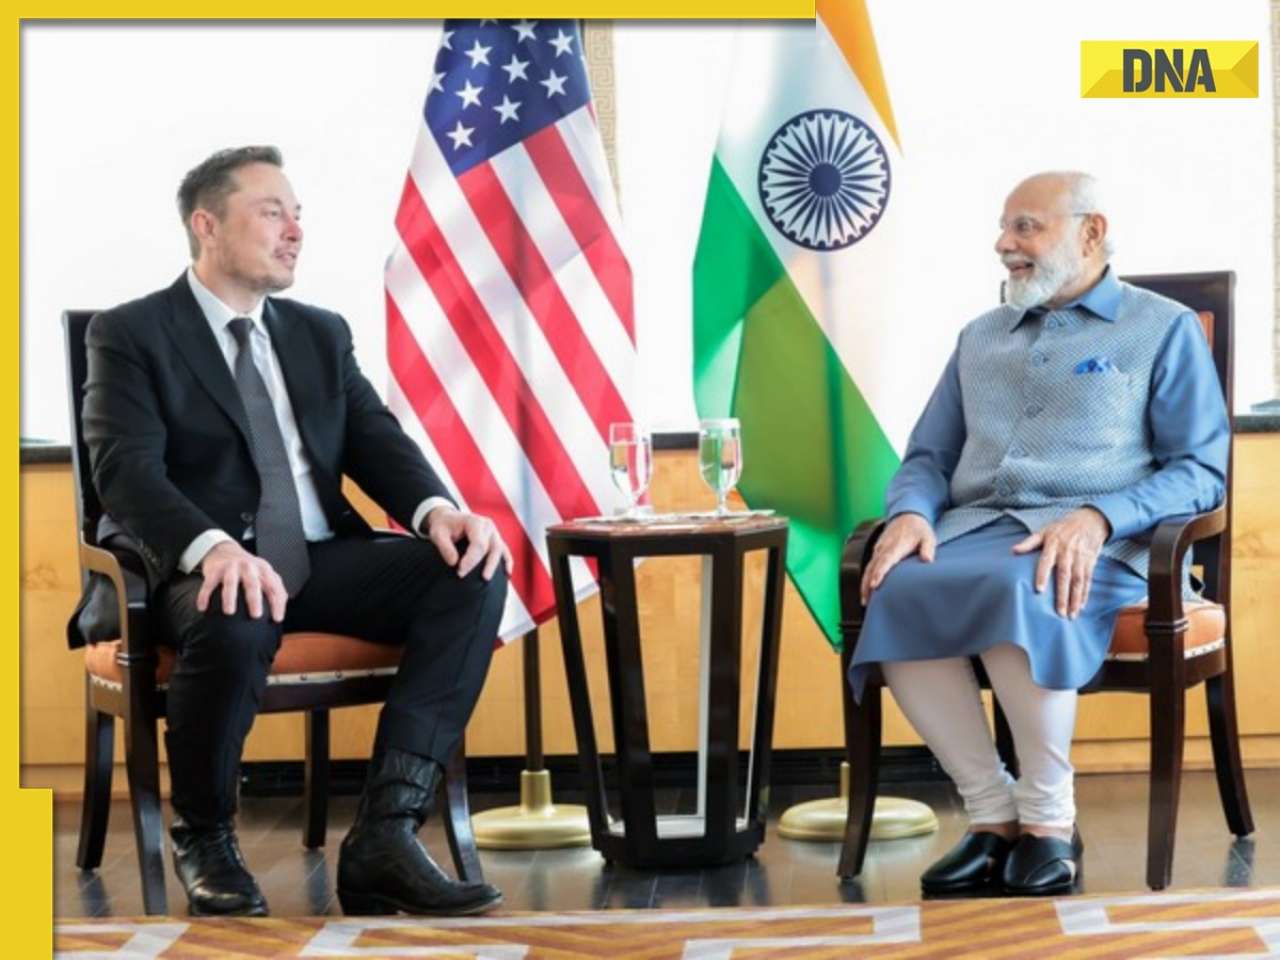 Tesla's Elon Musk confirms India visit, says 